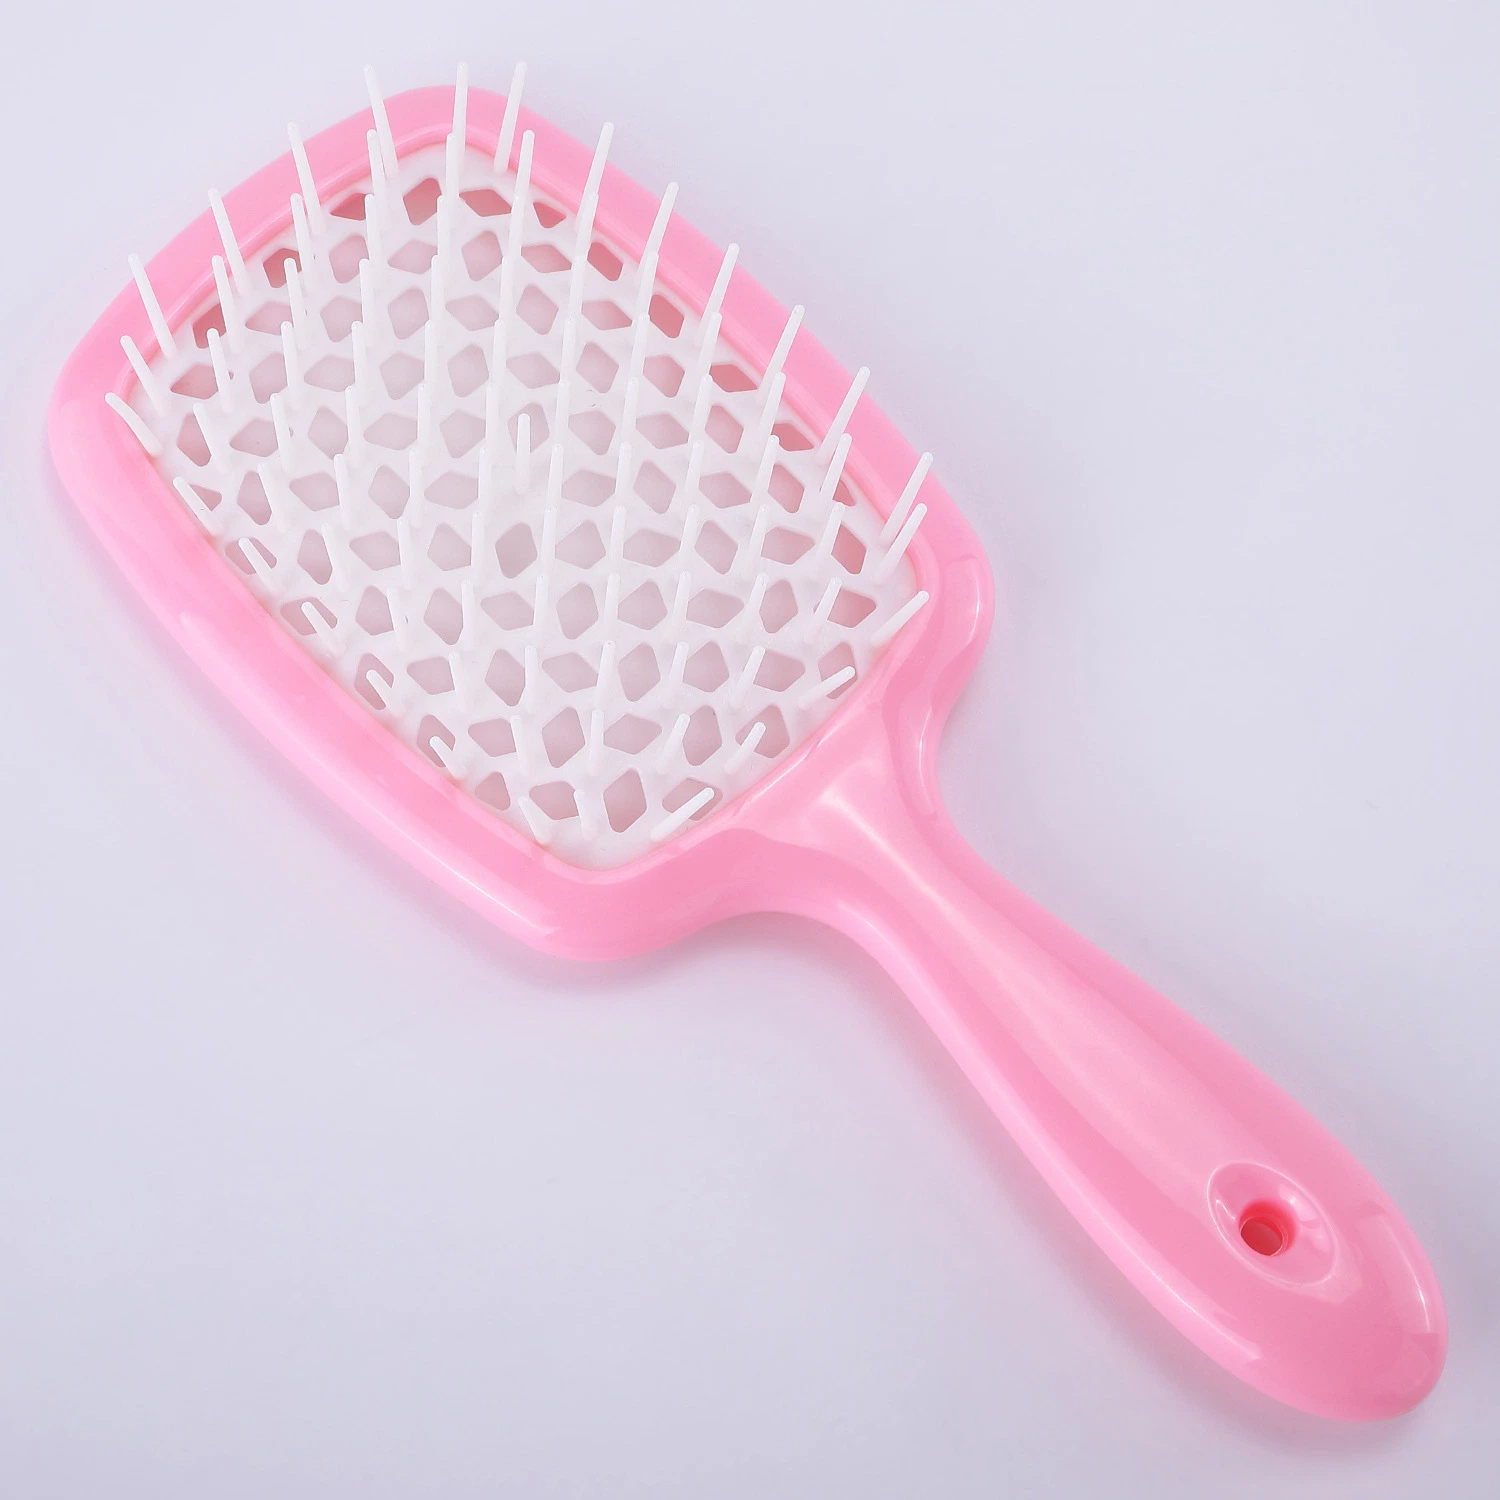 Professional Private Label Hair Brush Detangler Vent Cordless Self Cleaning Shampoo Brush Hair for Women